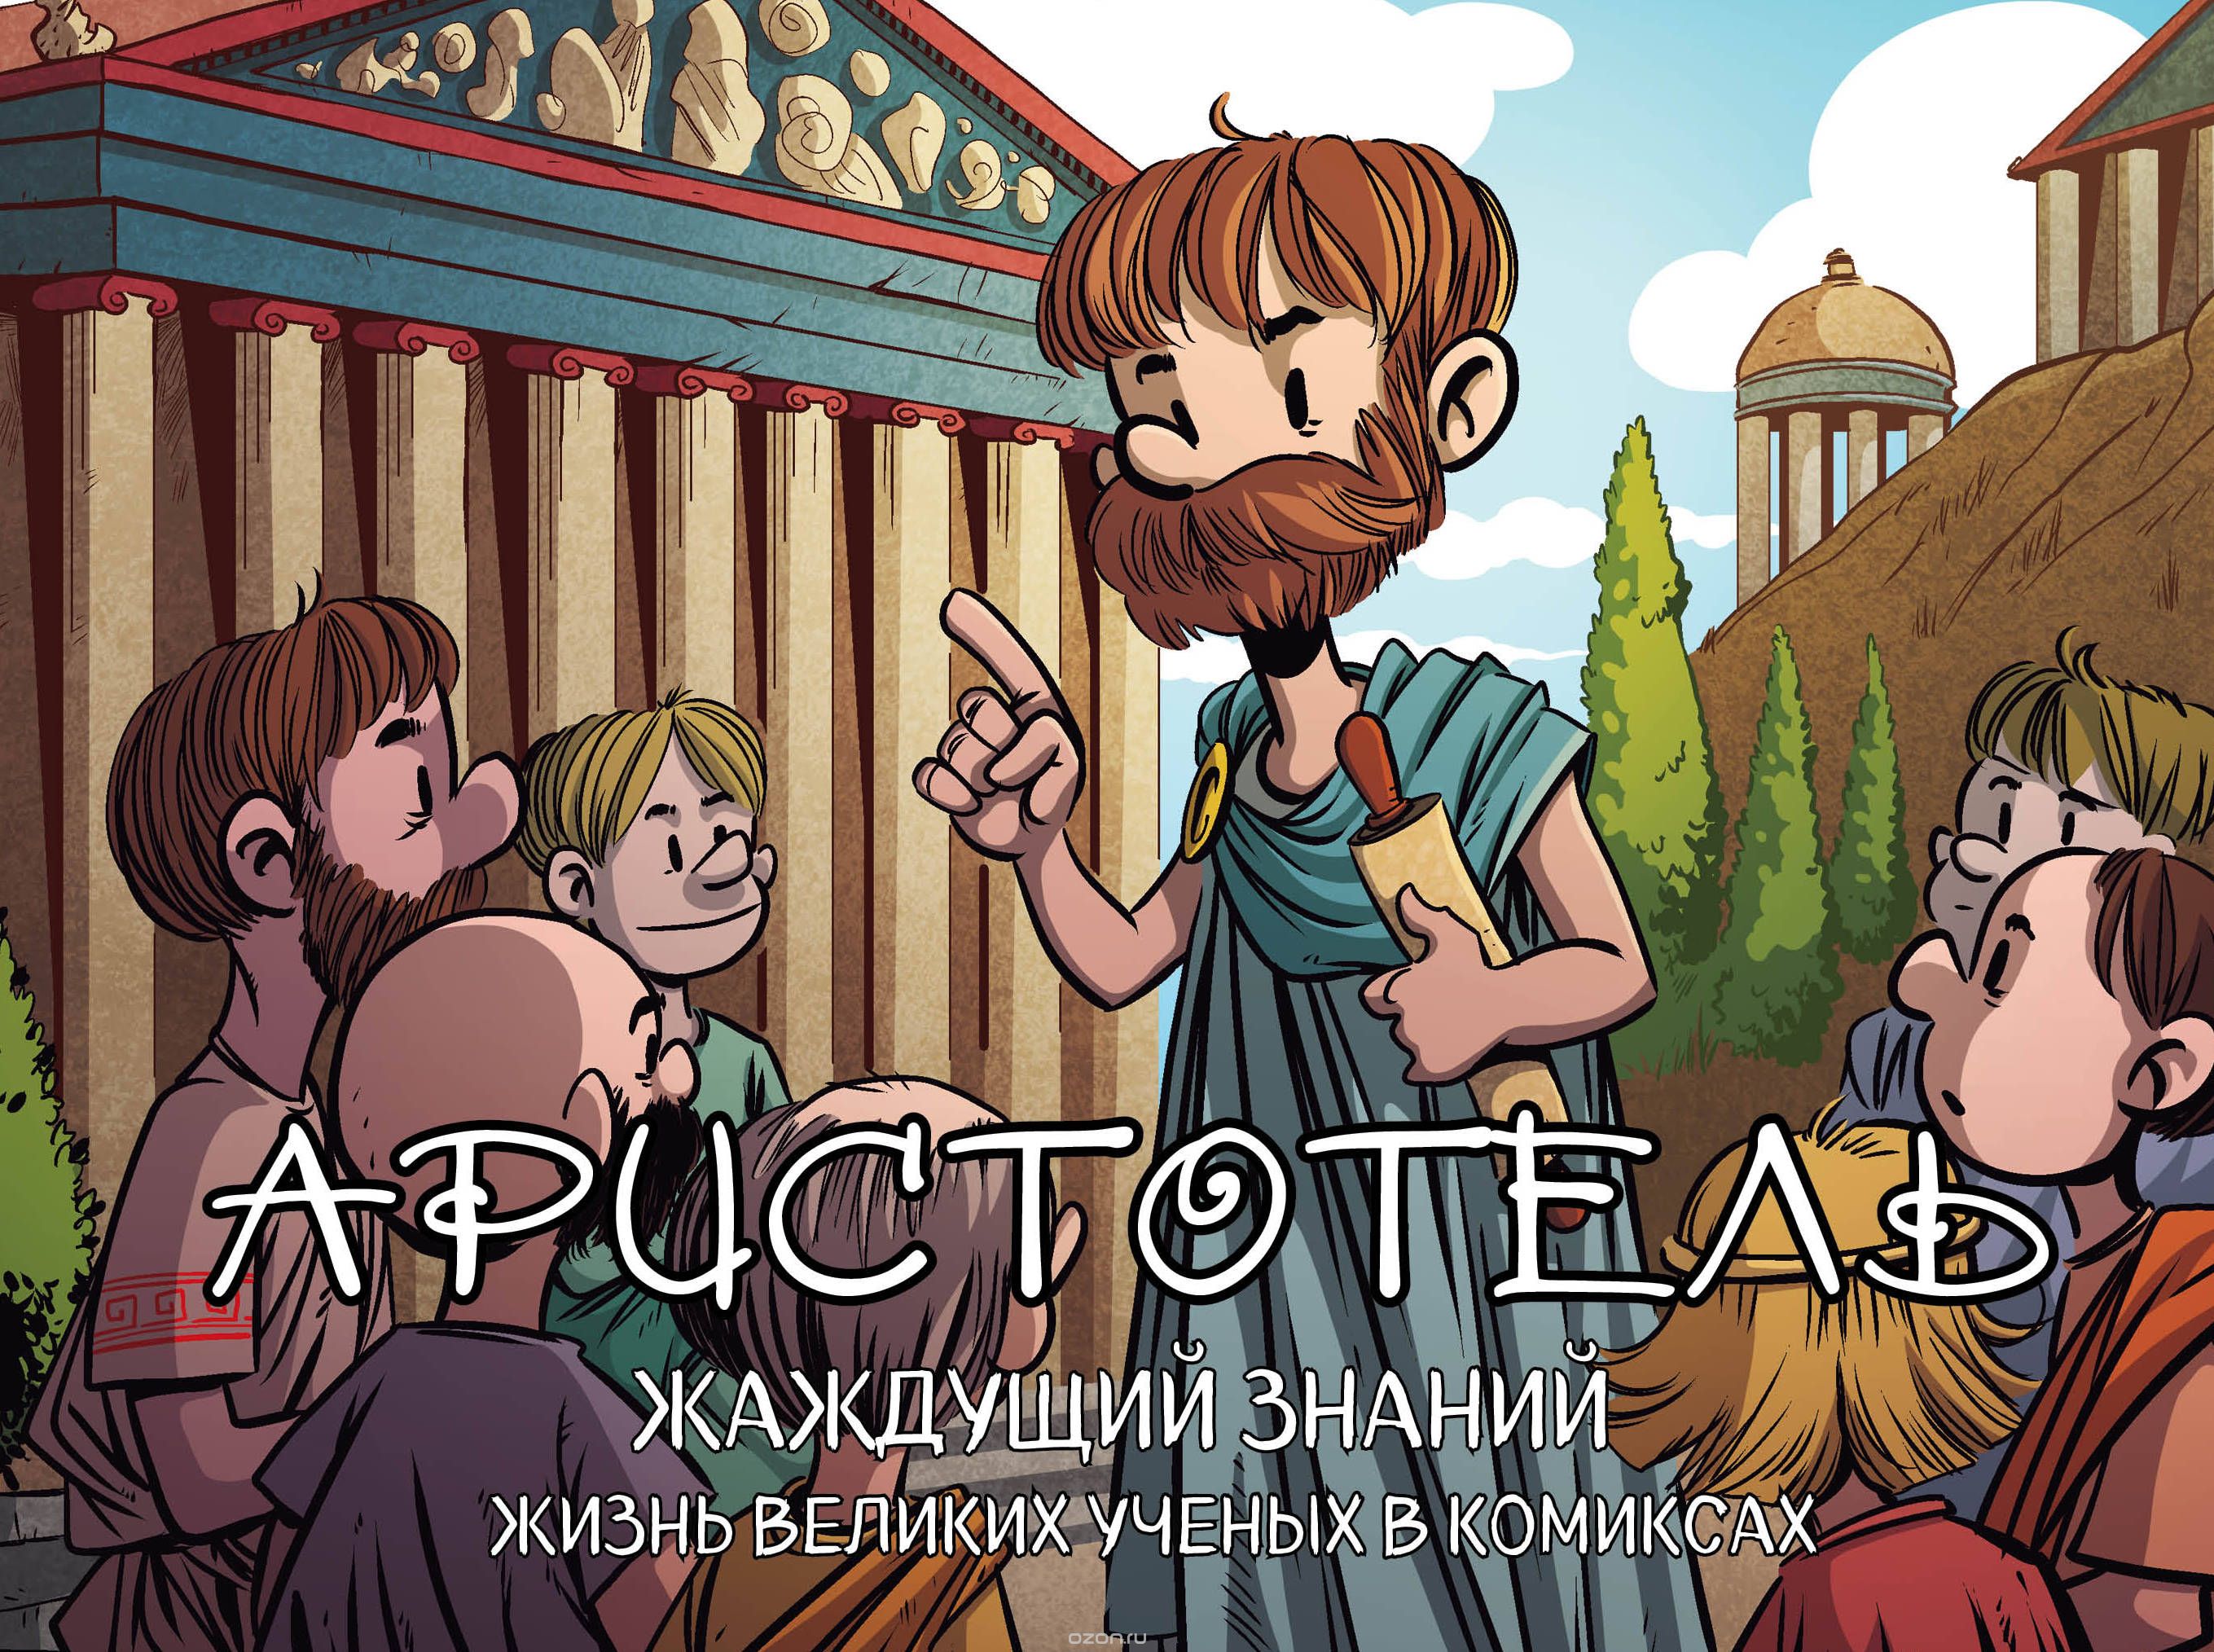 Комикс на русском языке «Аристотель. Жаждущий знаний»